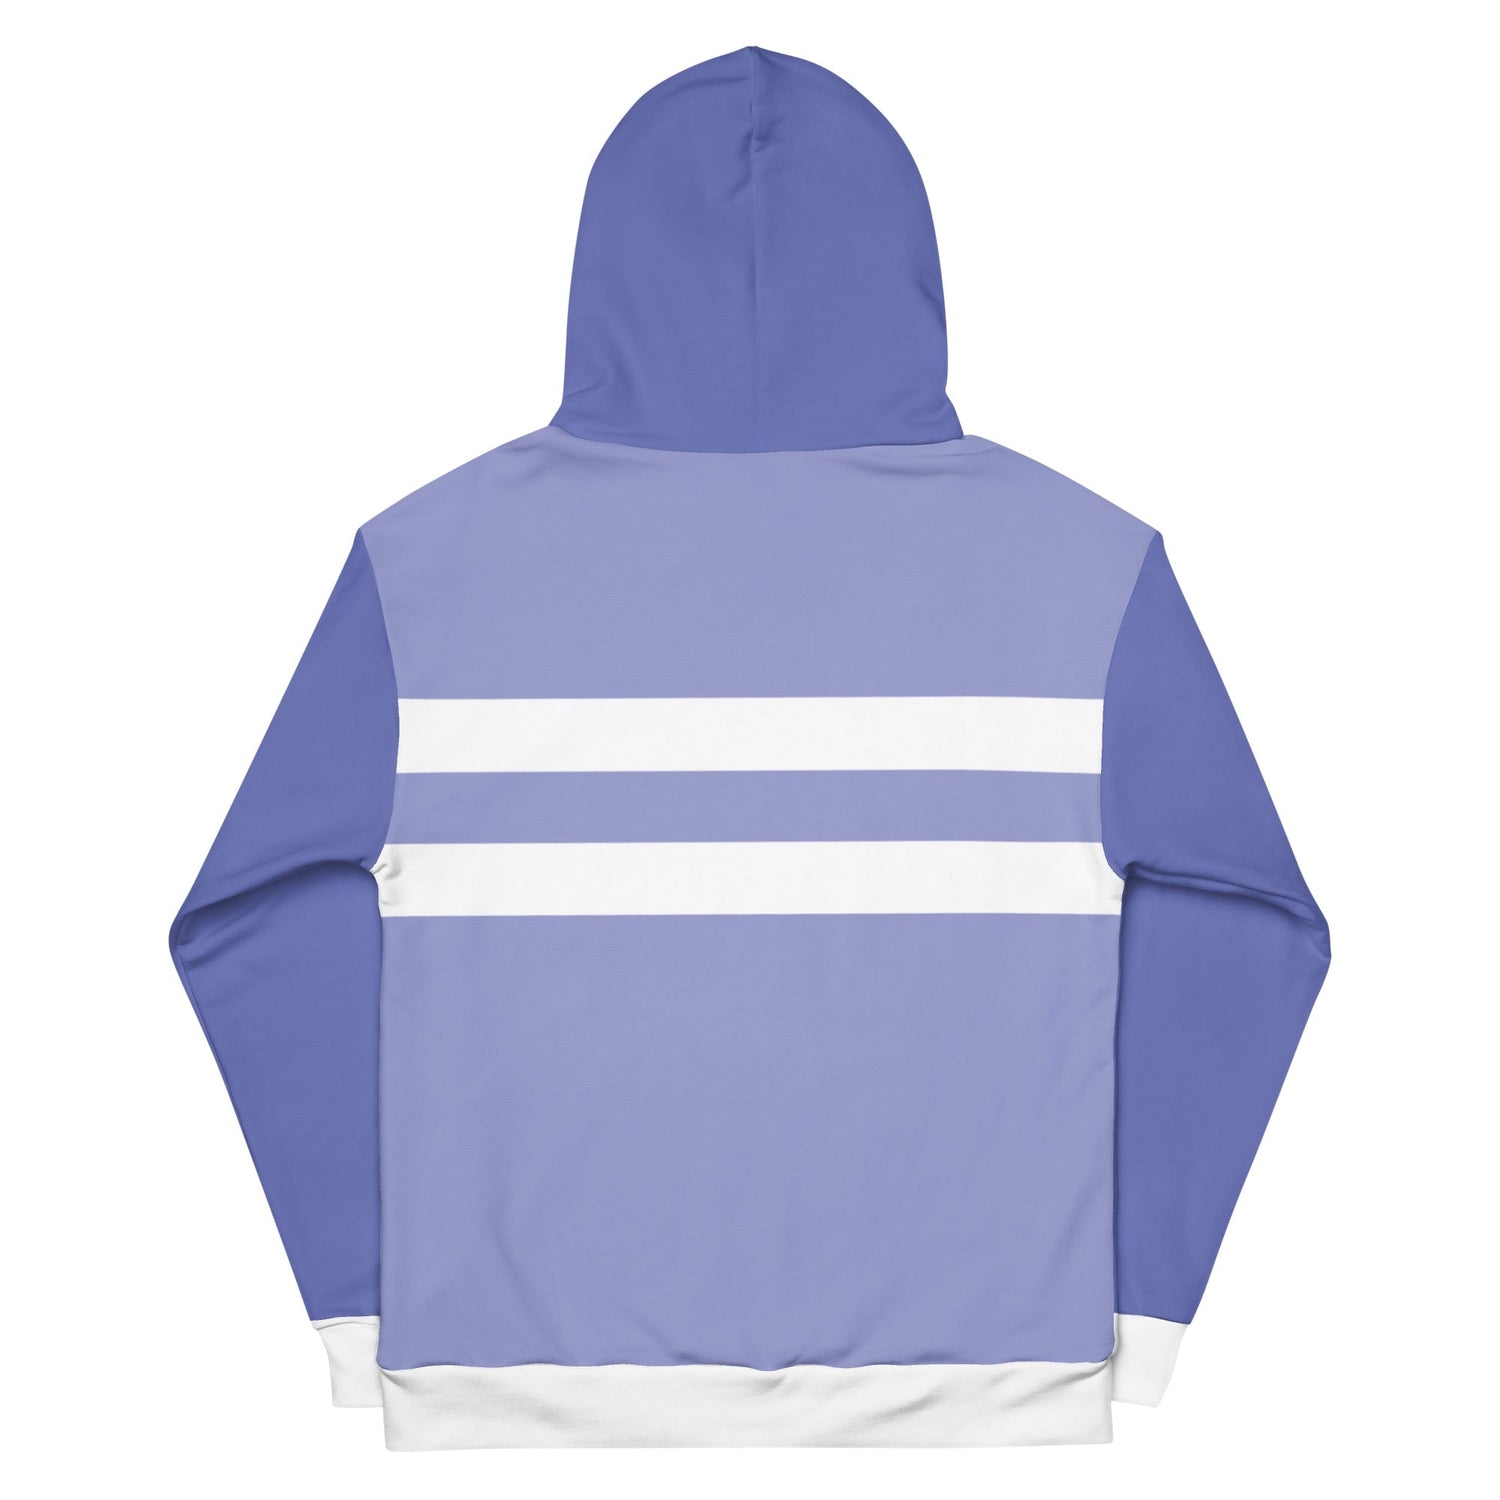 South Park Towelie Color Block Unisex Hooded Sweatshirt - Paramount Shop